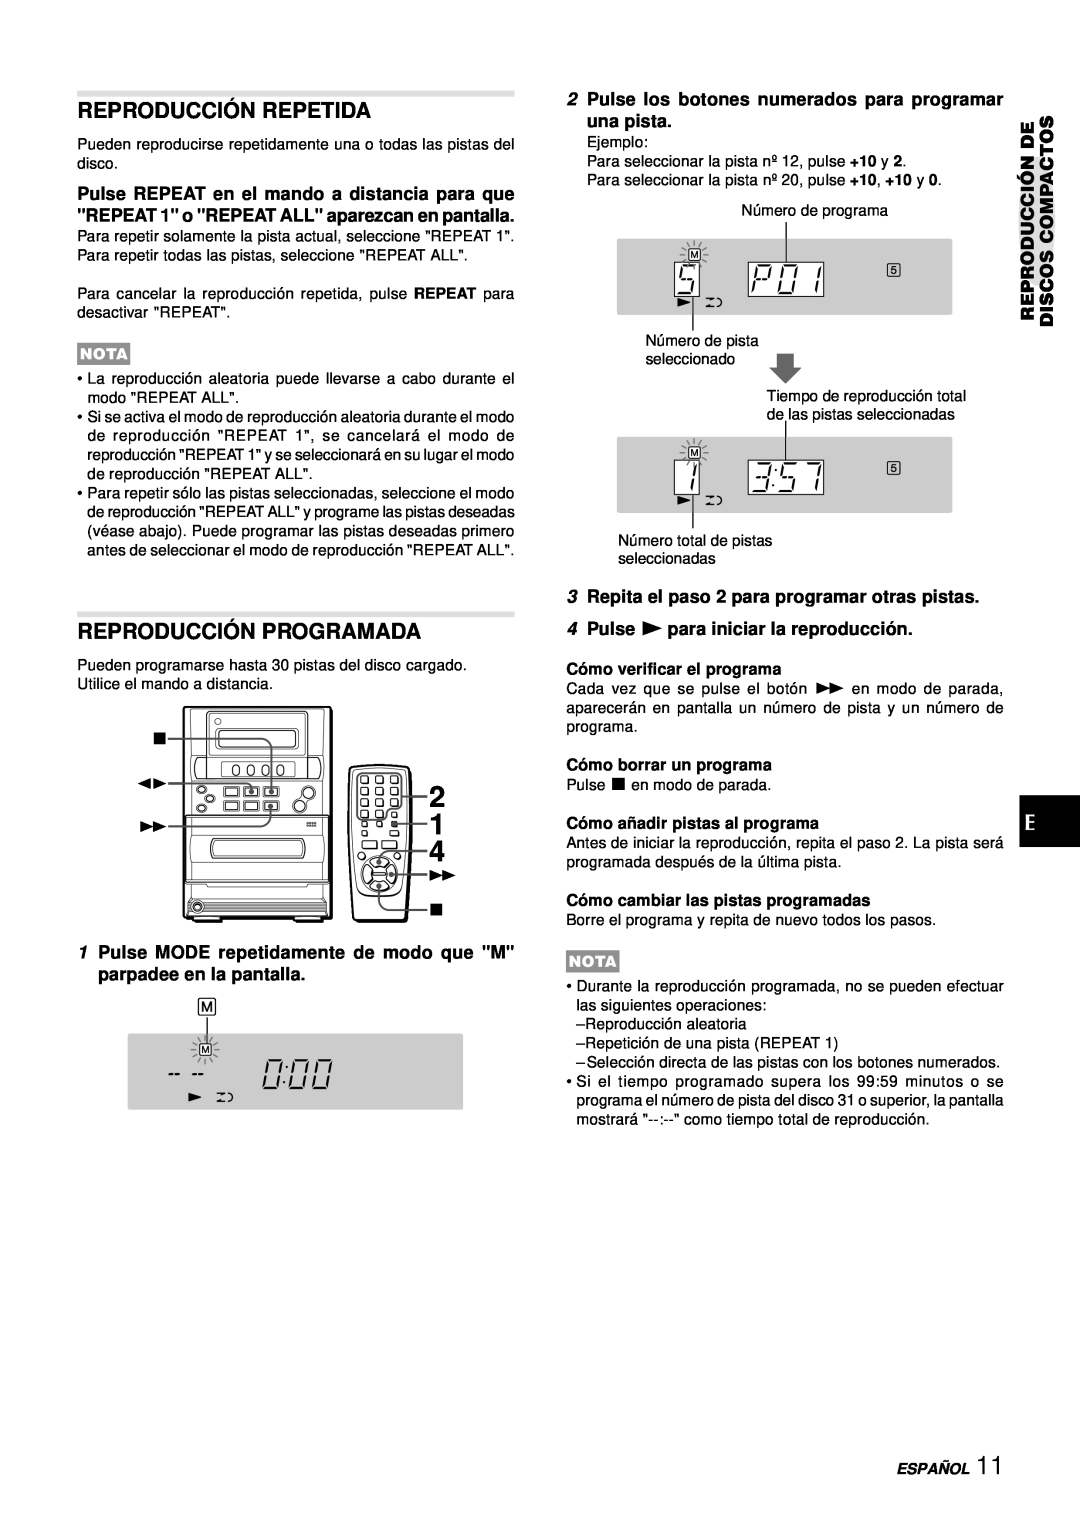 Aiwa LCX-357 Reproducció N Repetida, Reproducció N Programada, 2Pulse los botones numerados para programar, una pista 